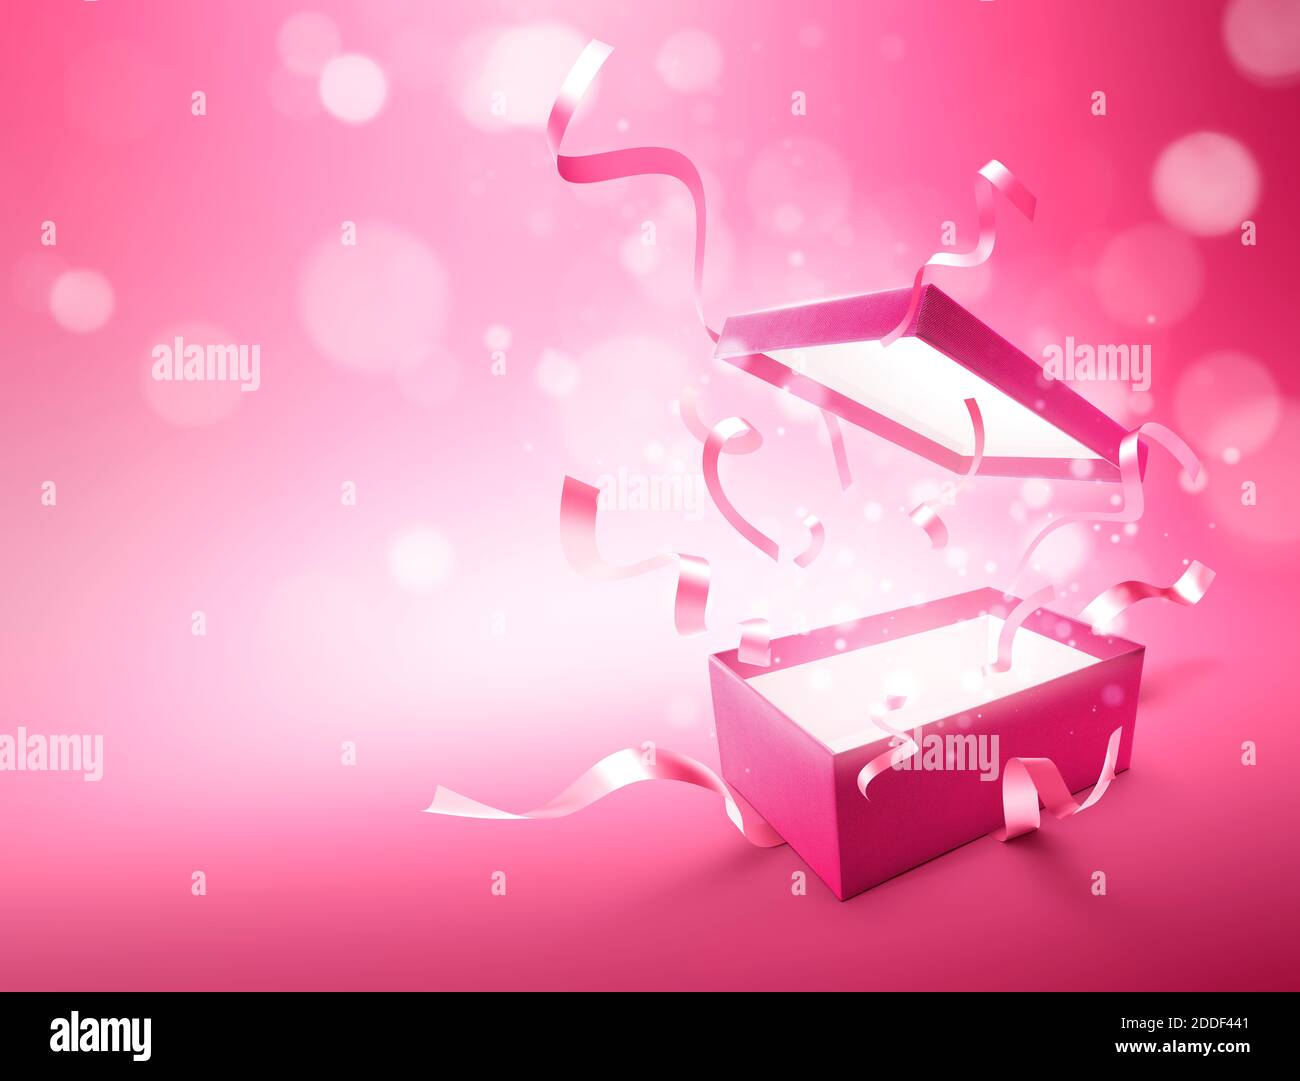 Bänder aus rosa Farbe aufspringenden Geschenkbox öffnen Stockfotografie -  Alamy